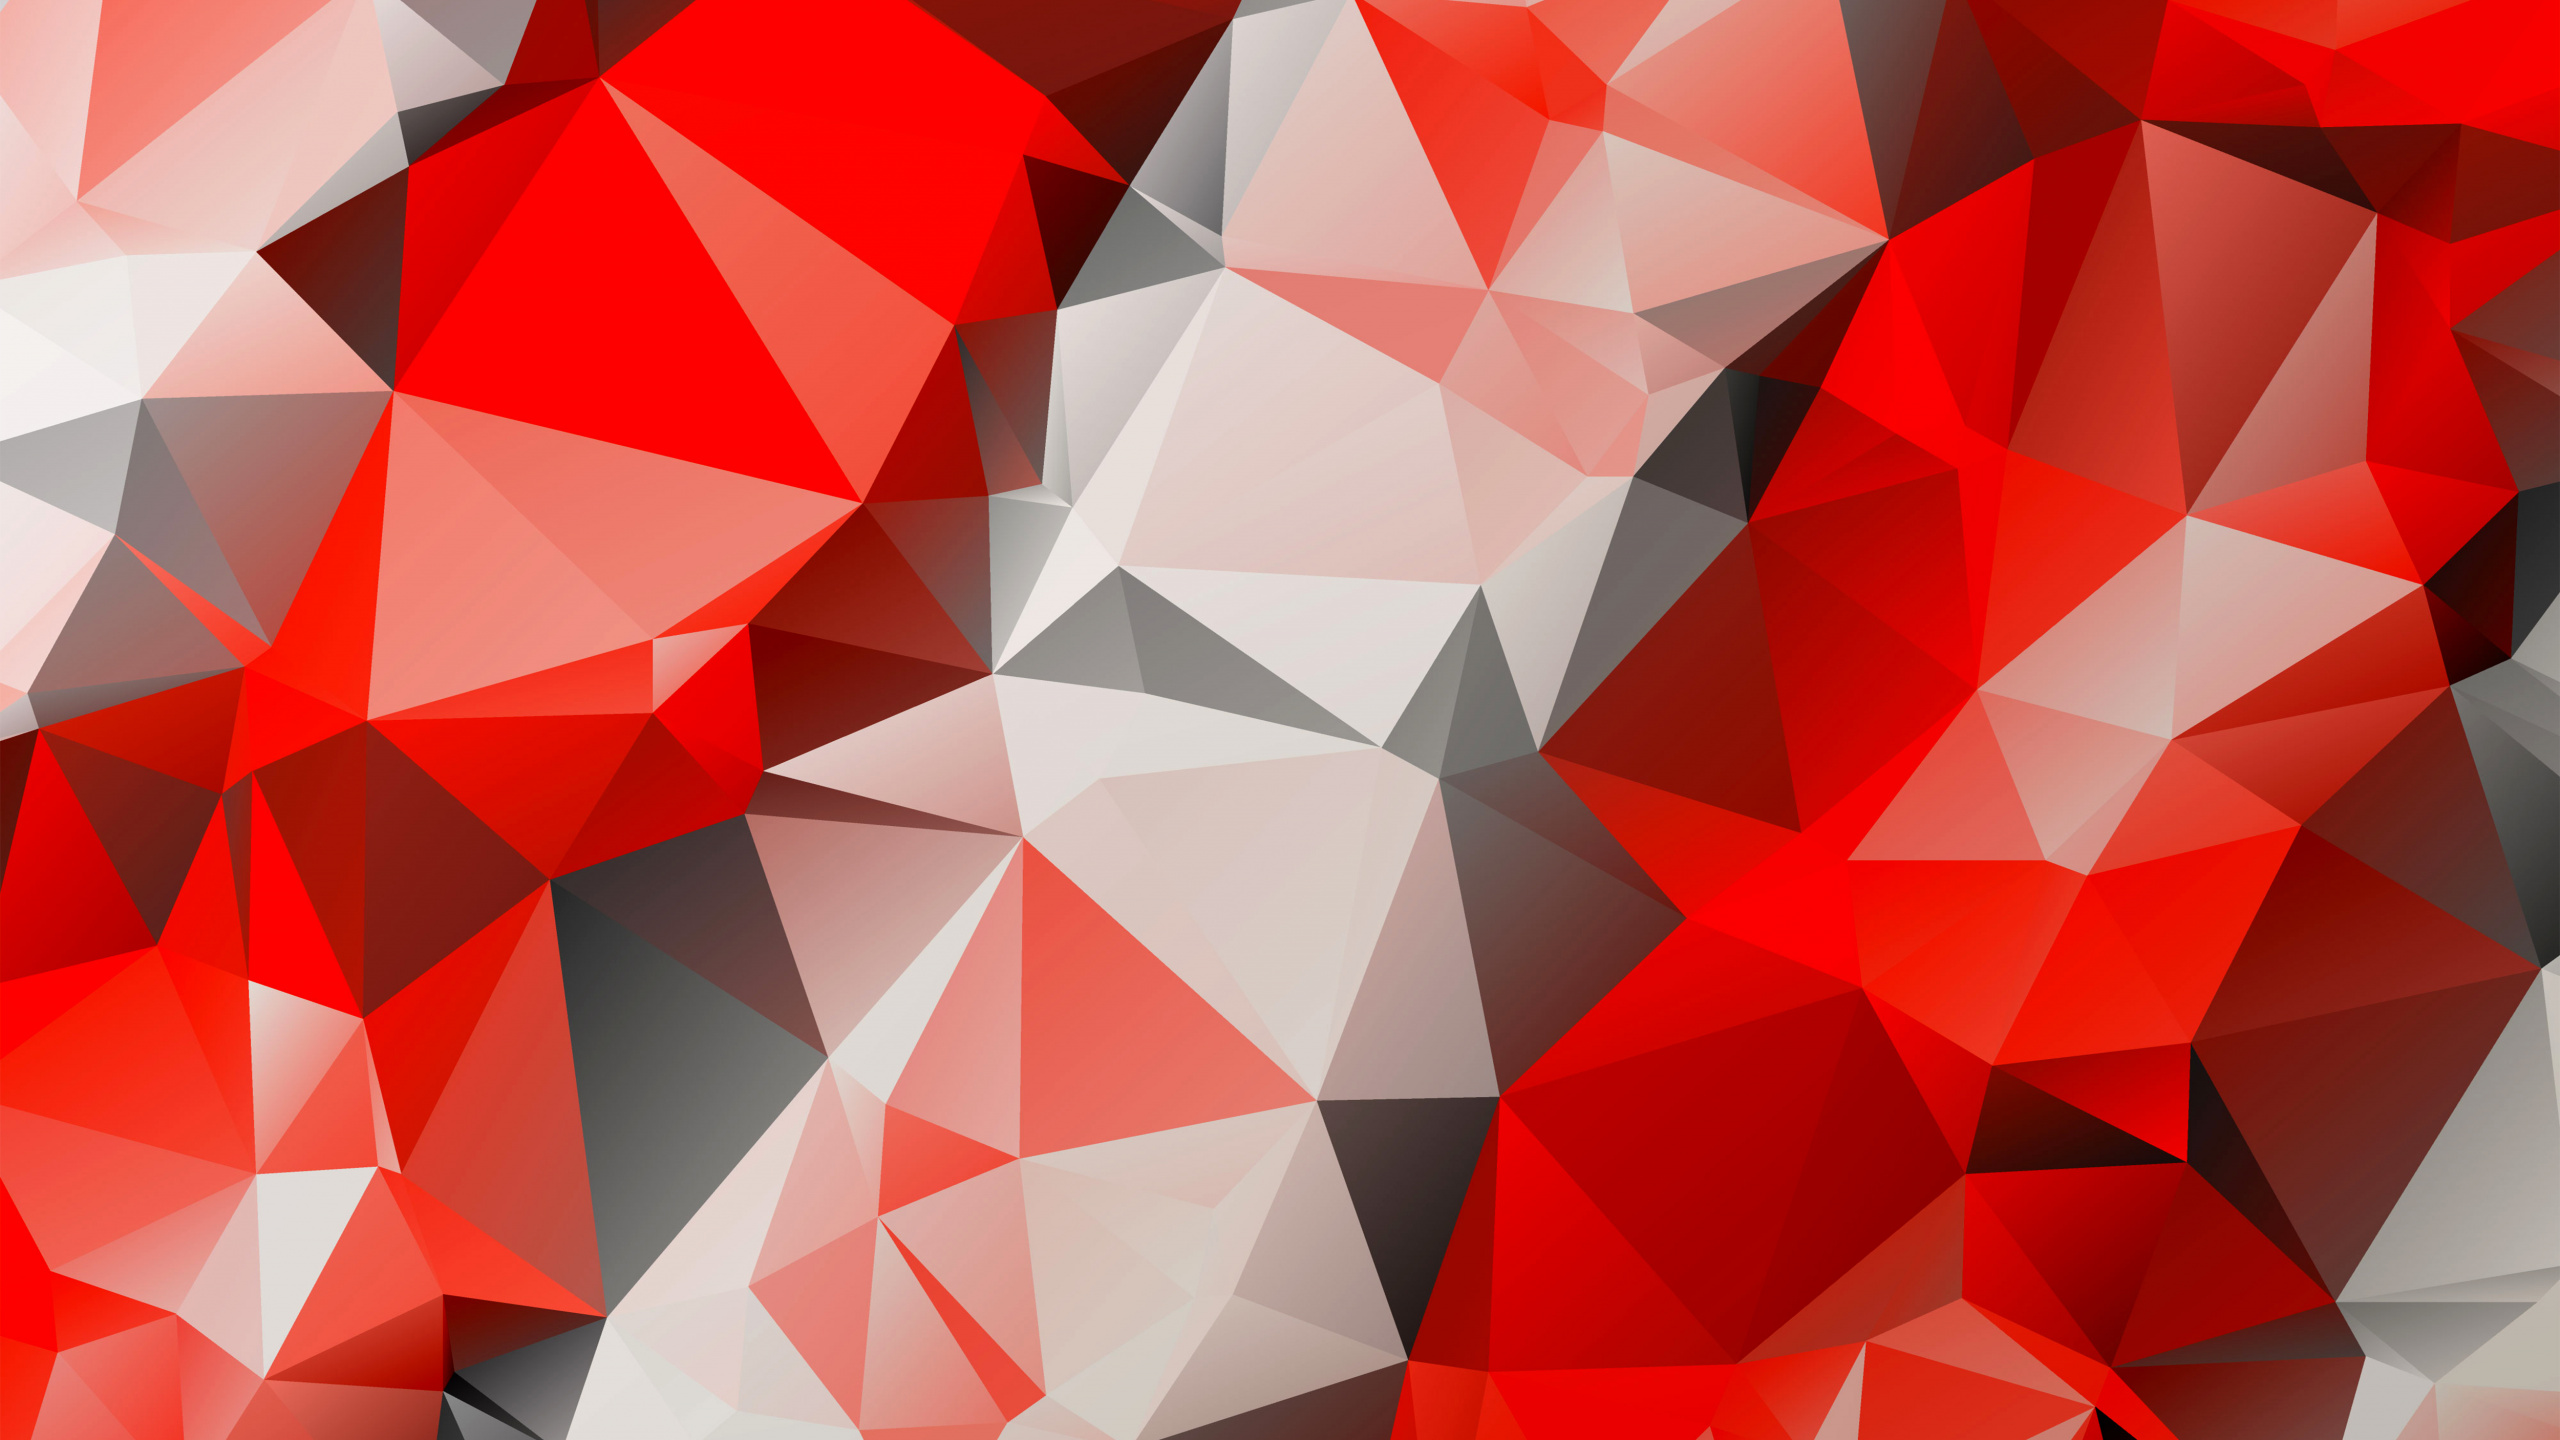 多边形, 红色的, 三角形, 对称, 矢量图形 壁纸 2560x1440 允许